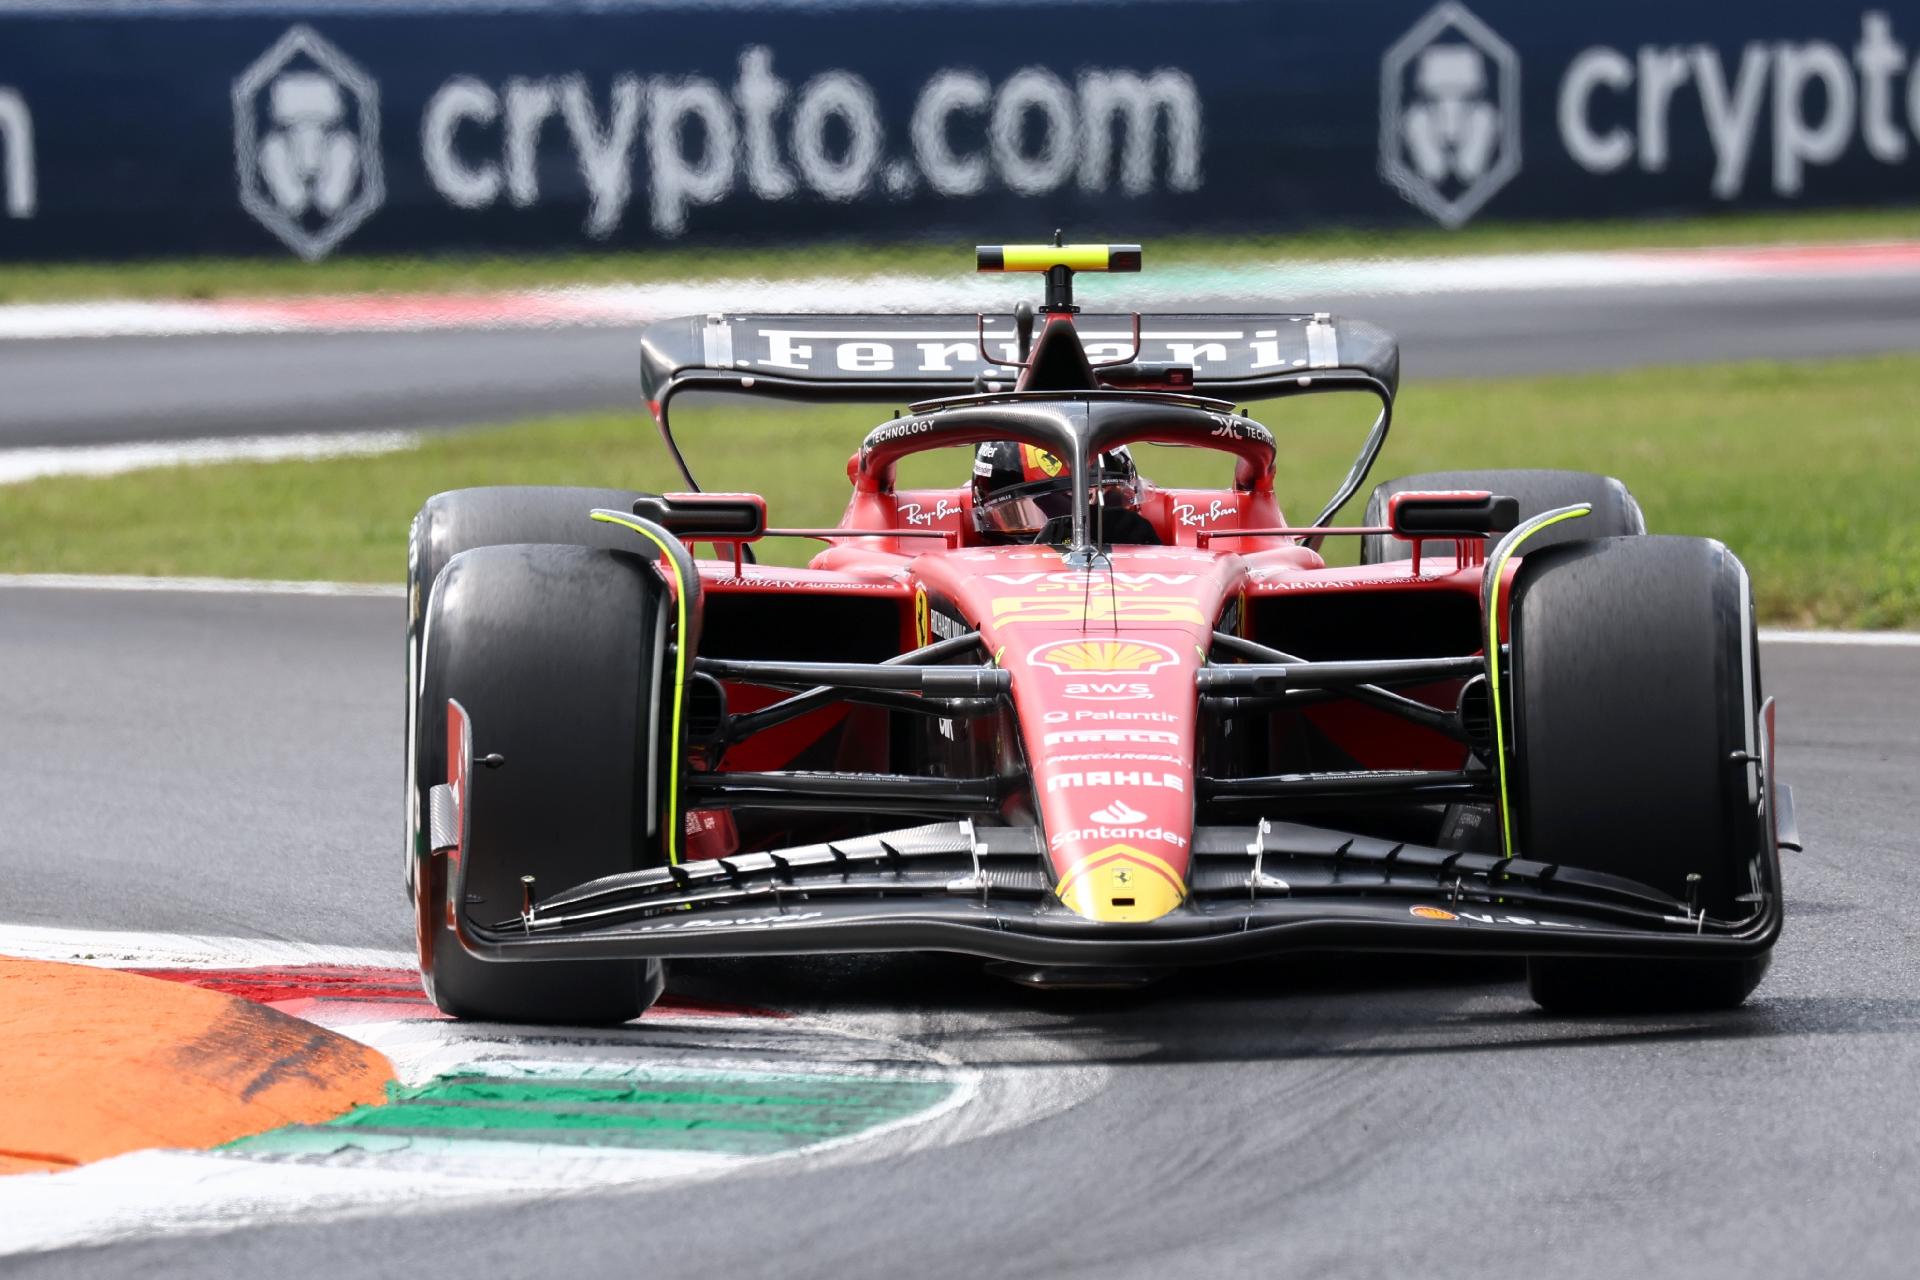 Fórmula 1: onde assistir ao 1º e 2º treino livre do GP da Itália